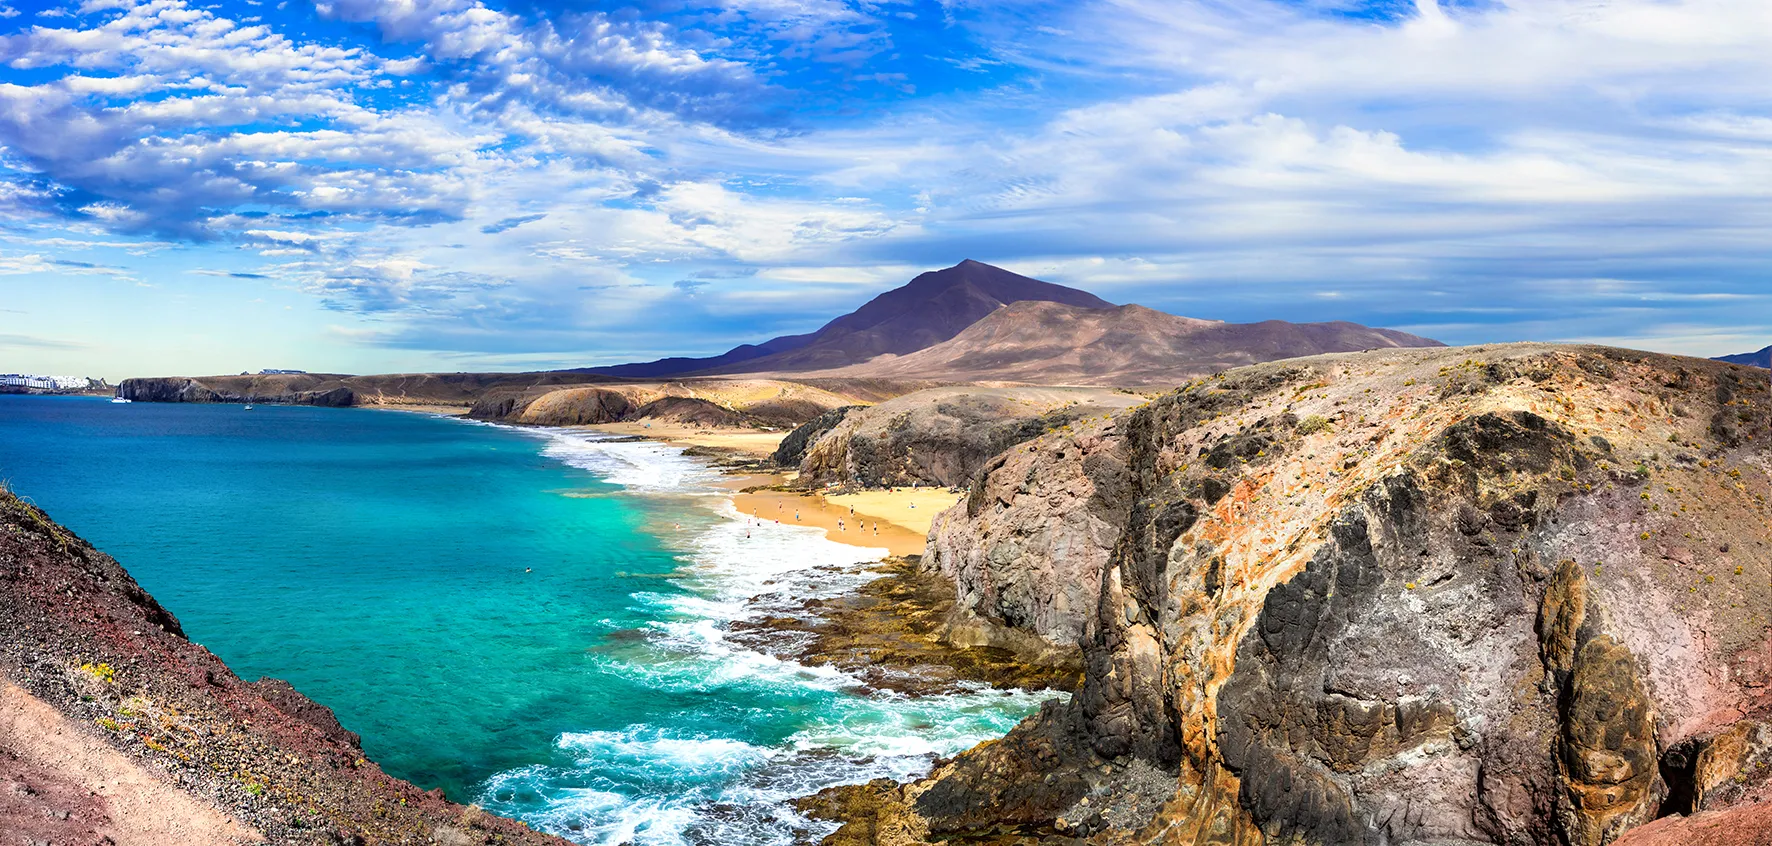 L'île rocheuse de Lanzarote